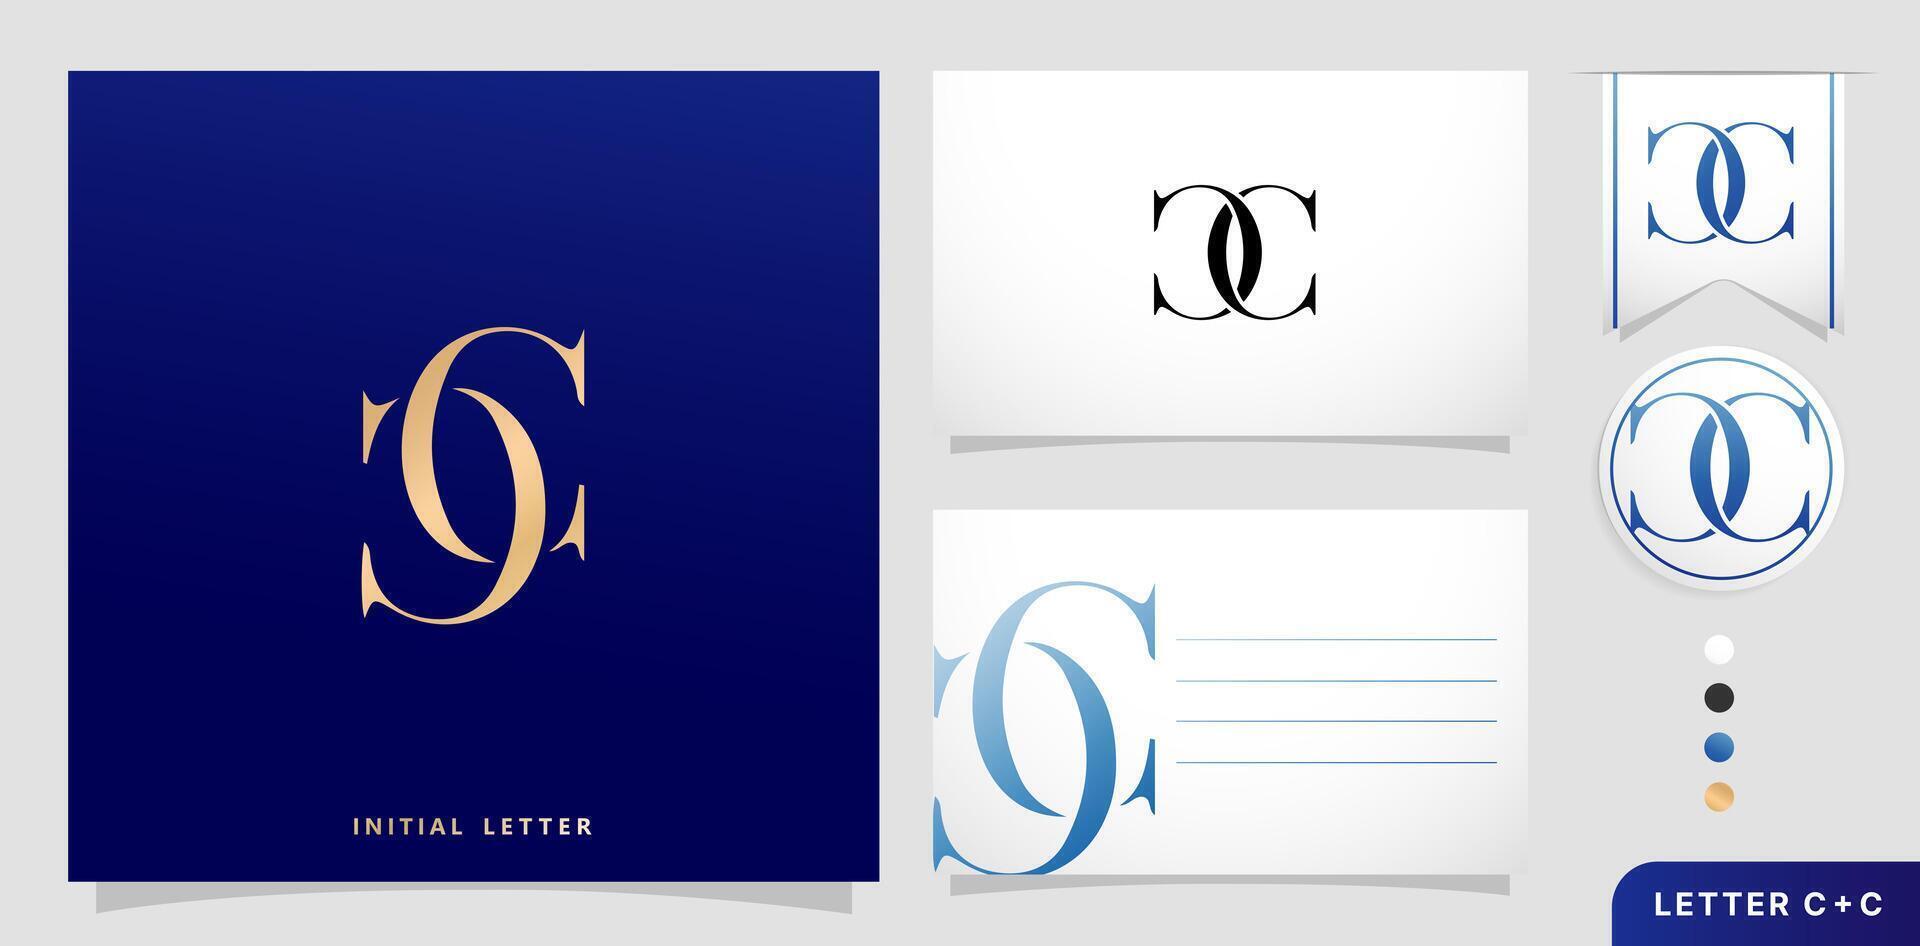 un conjunto de negocio tarjetas con el letra cc lujo inicial letras C y C logos diseños en azul colores para marca anuncios campañas, tipografía, bordado, cubierta invitaciones, sobre firmar símbolos vector